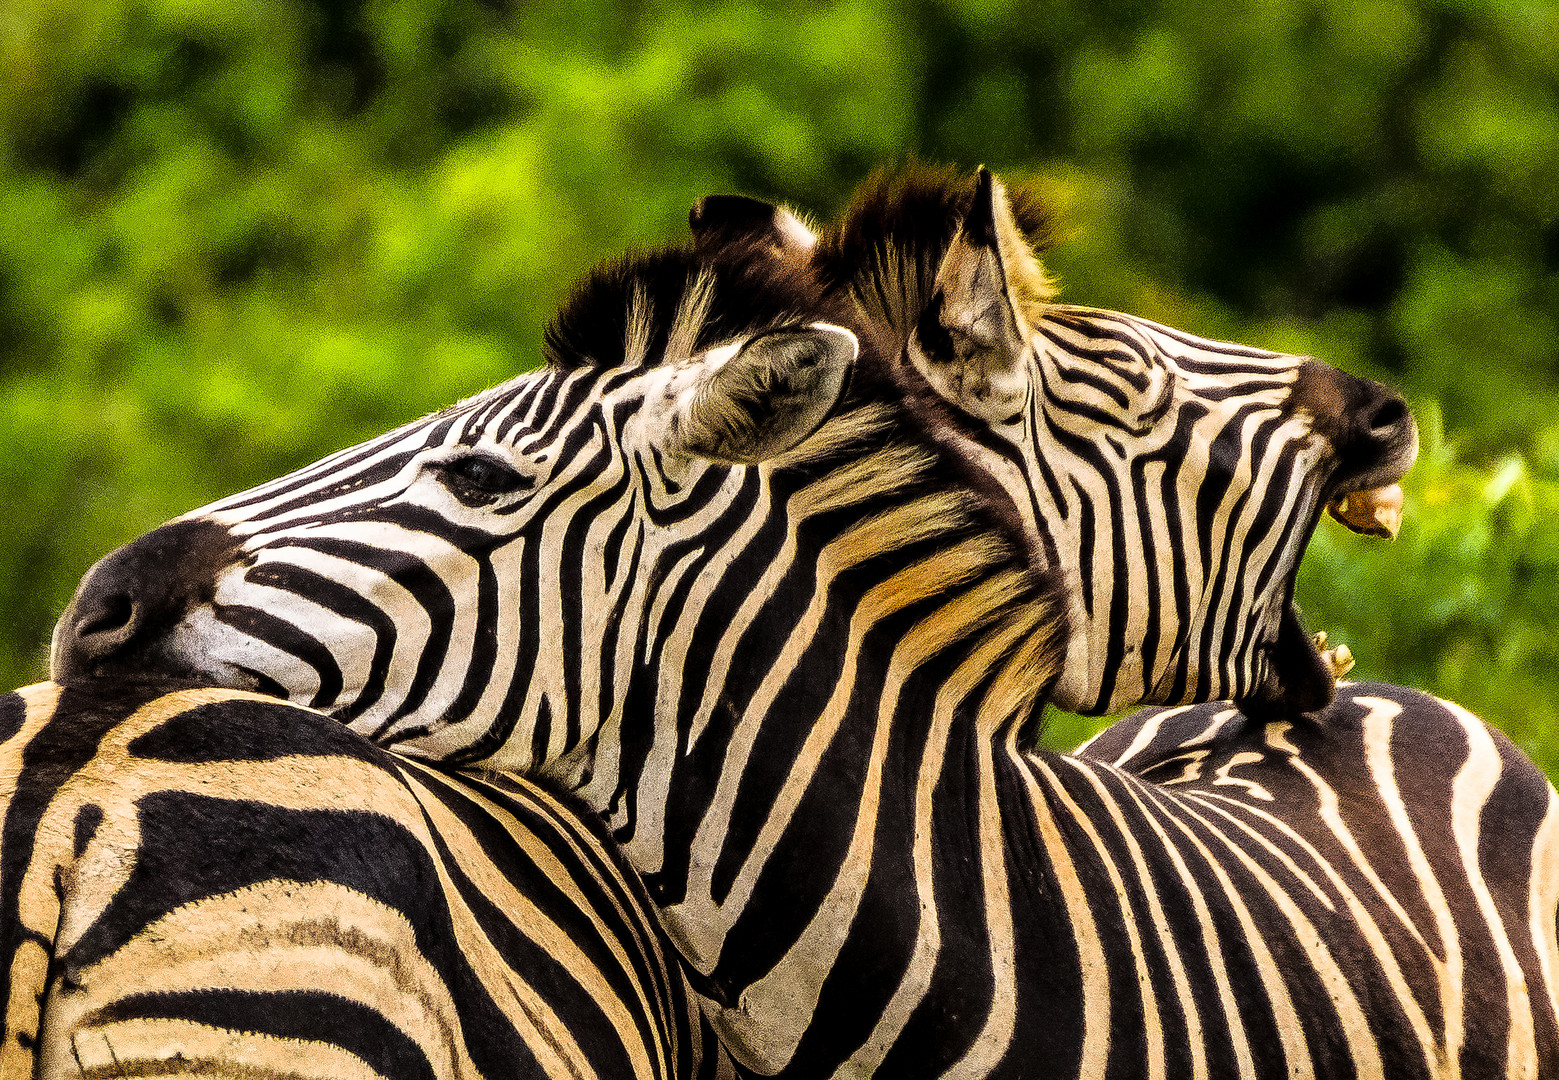 My Zebras- Siehst Du was, ich bin müde